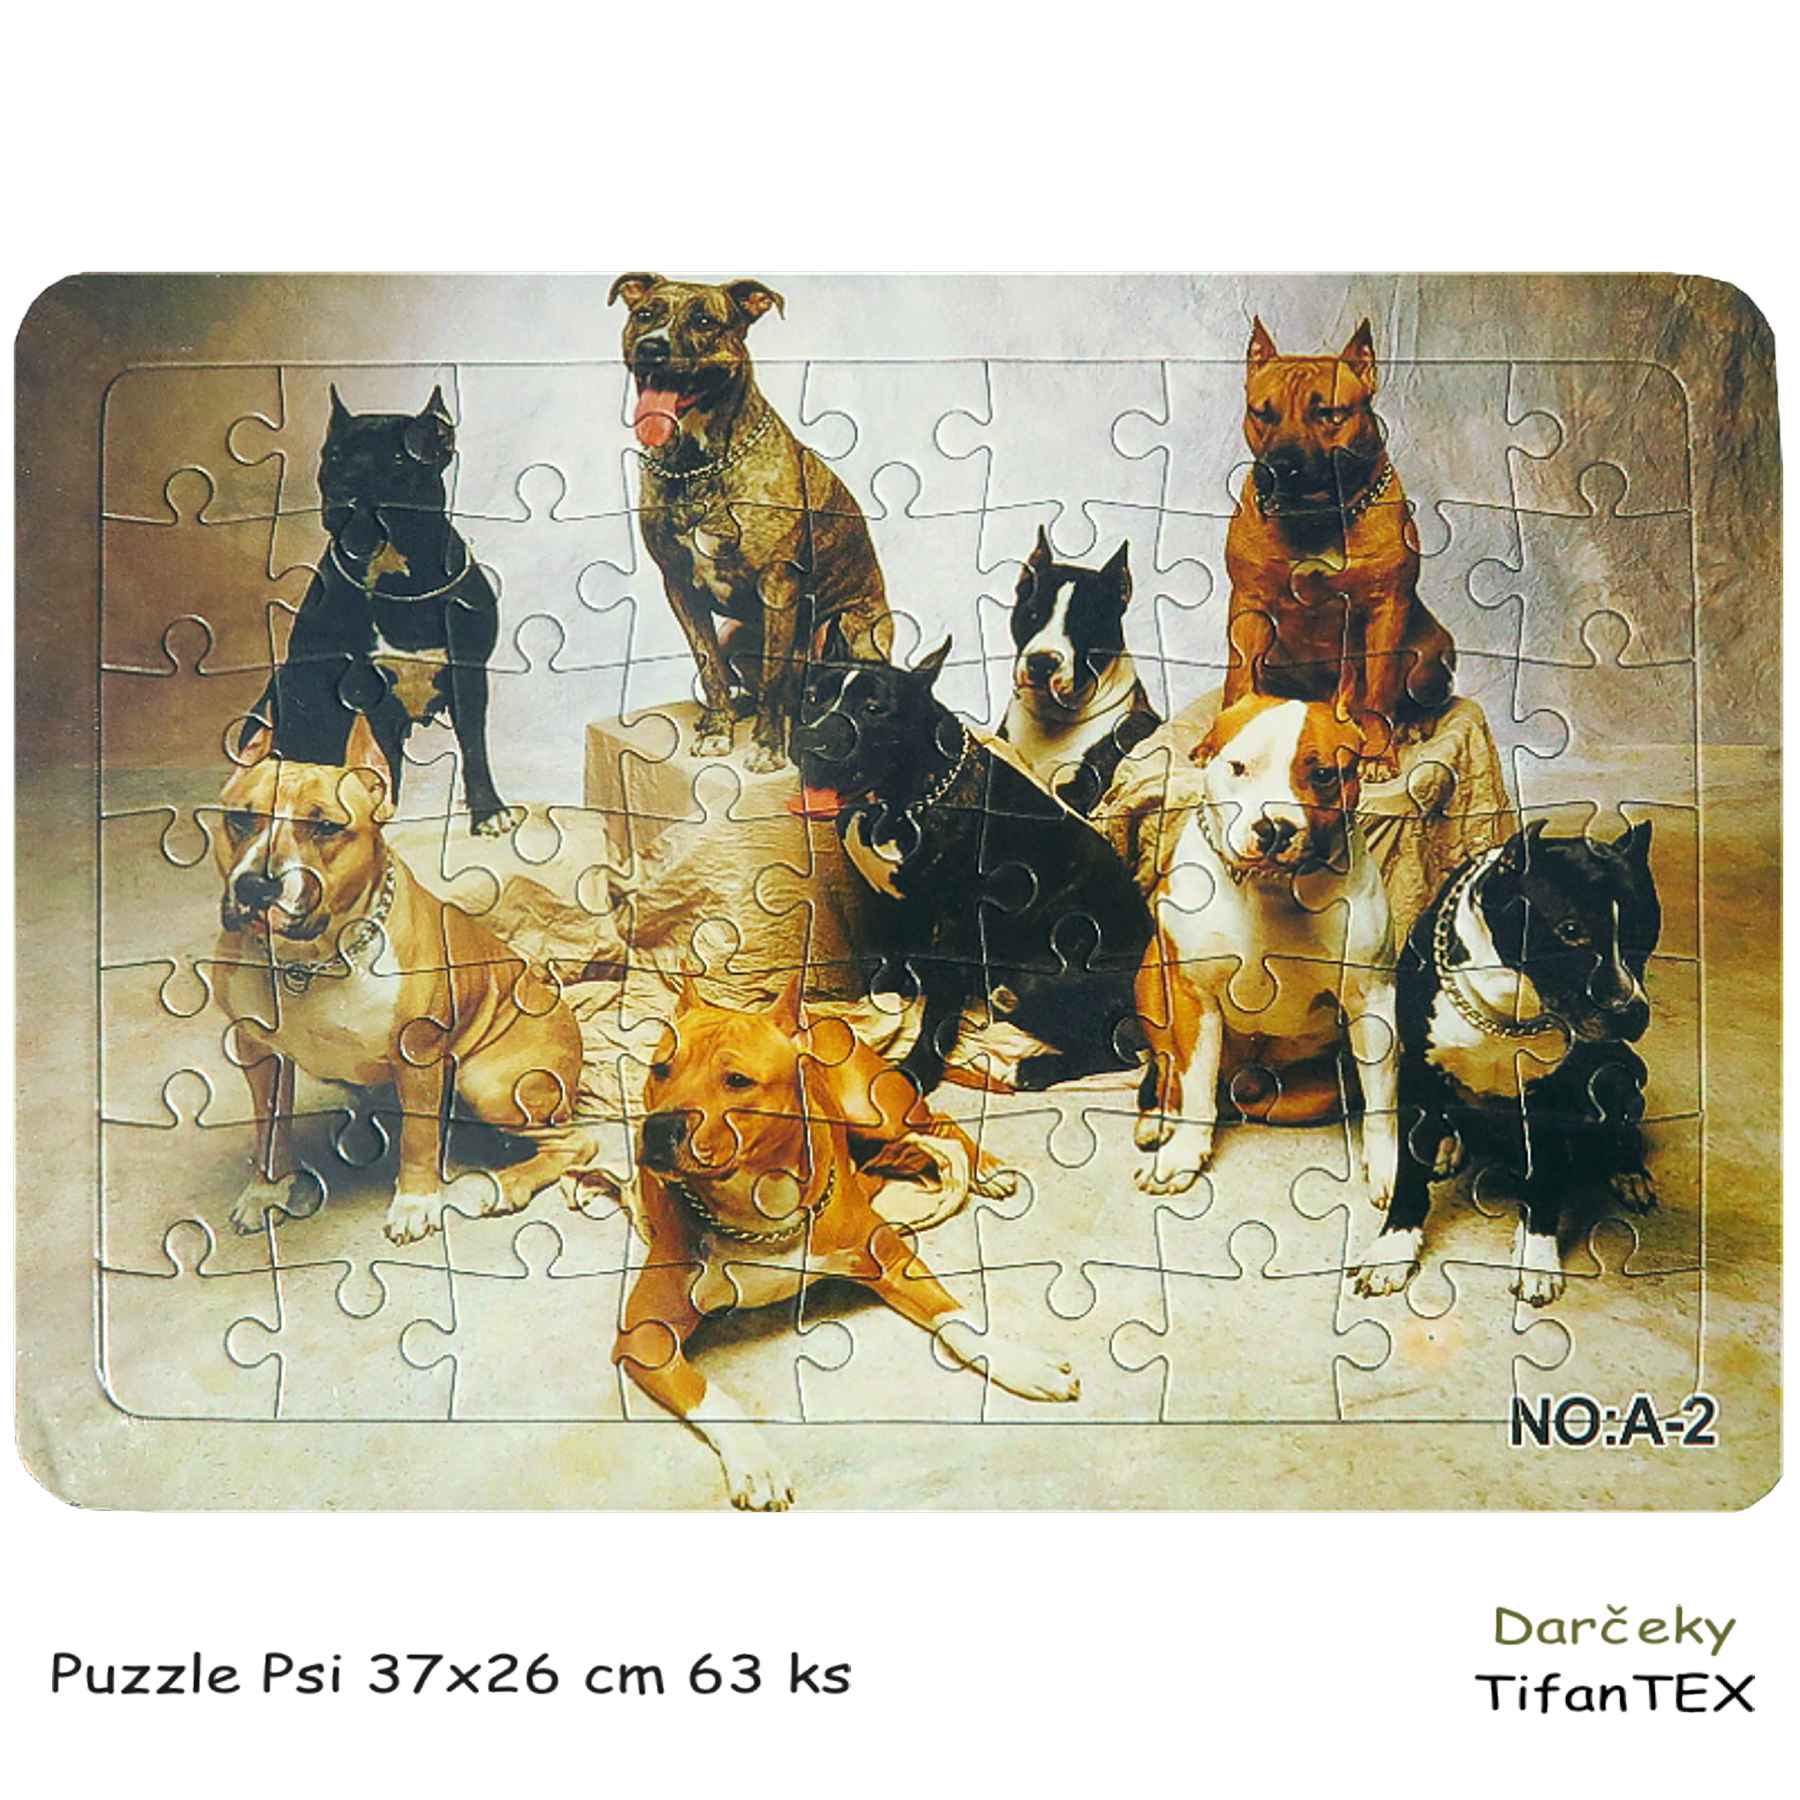 Puzzle Psi 37x26 cm 63 ks